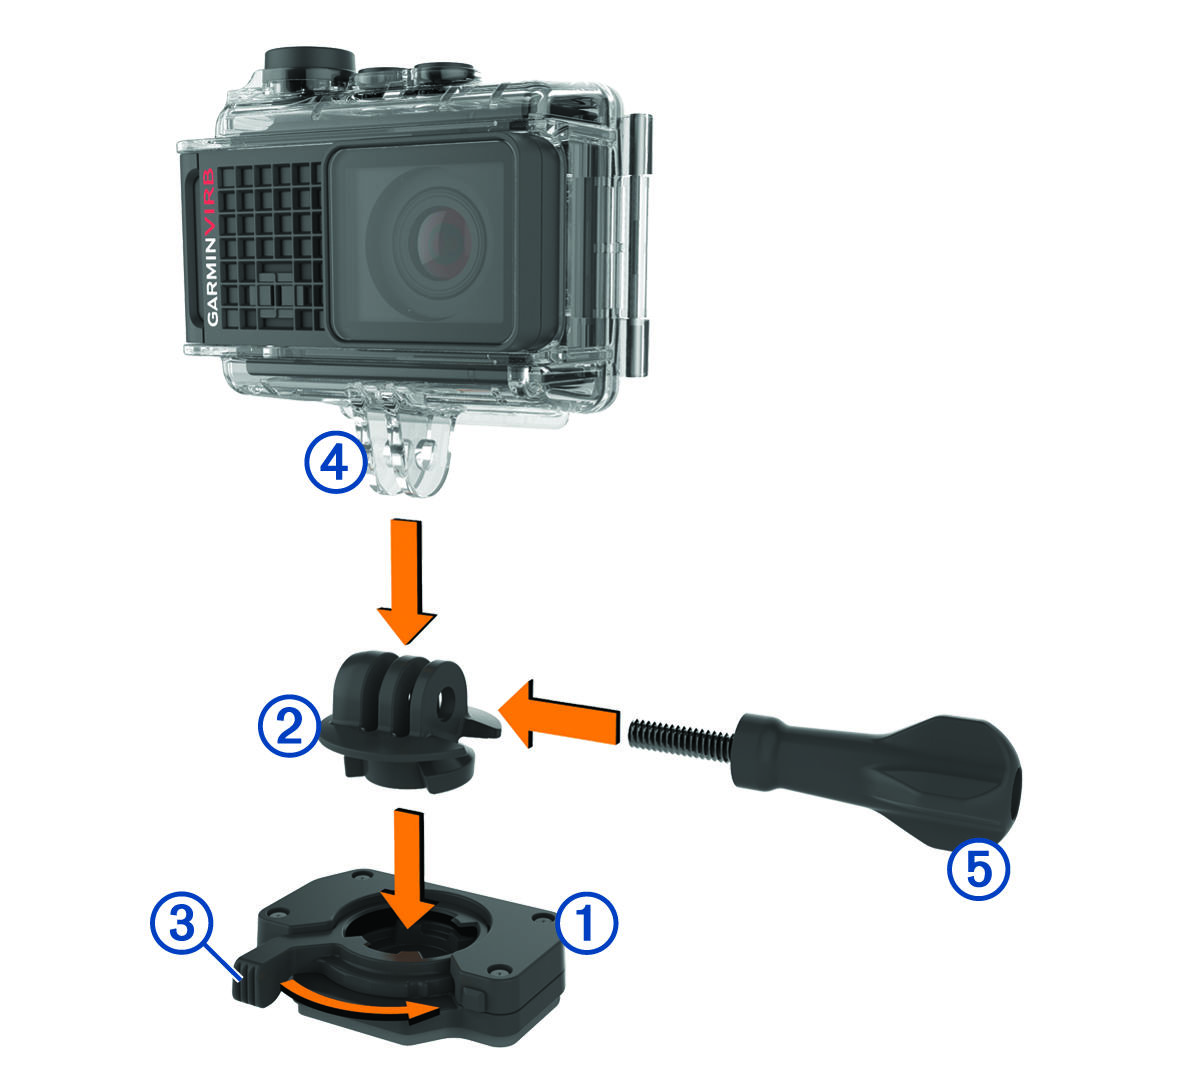 Insertion de l'adaptateur, du support pour caméra et de la vis de serrage dans la base avec levier, avec légendes